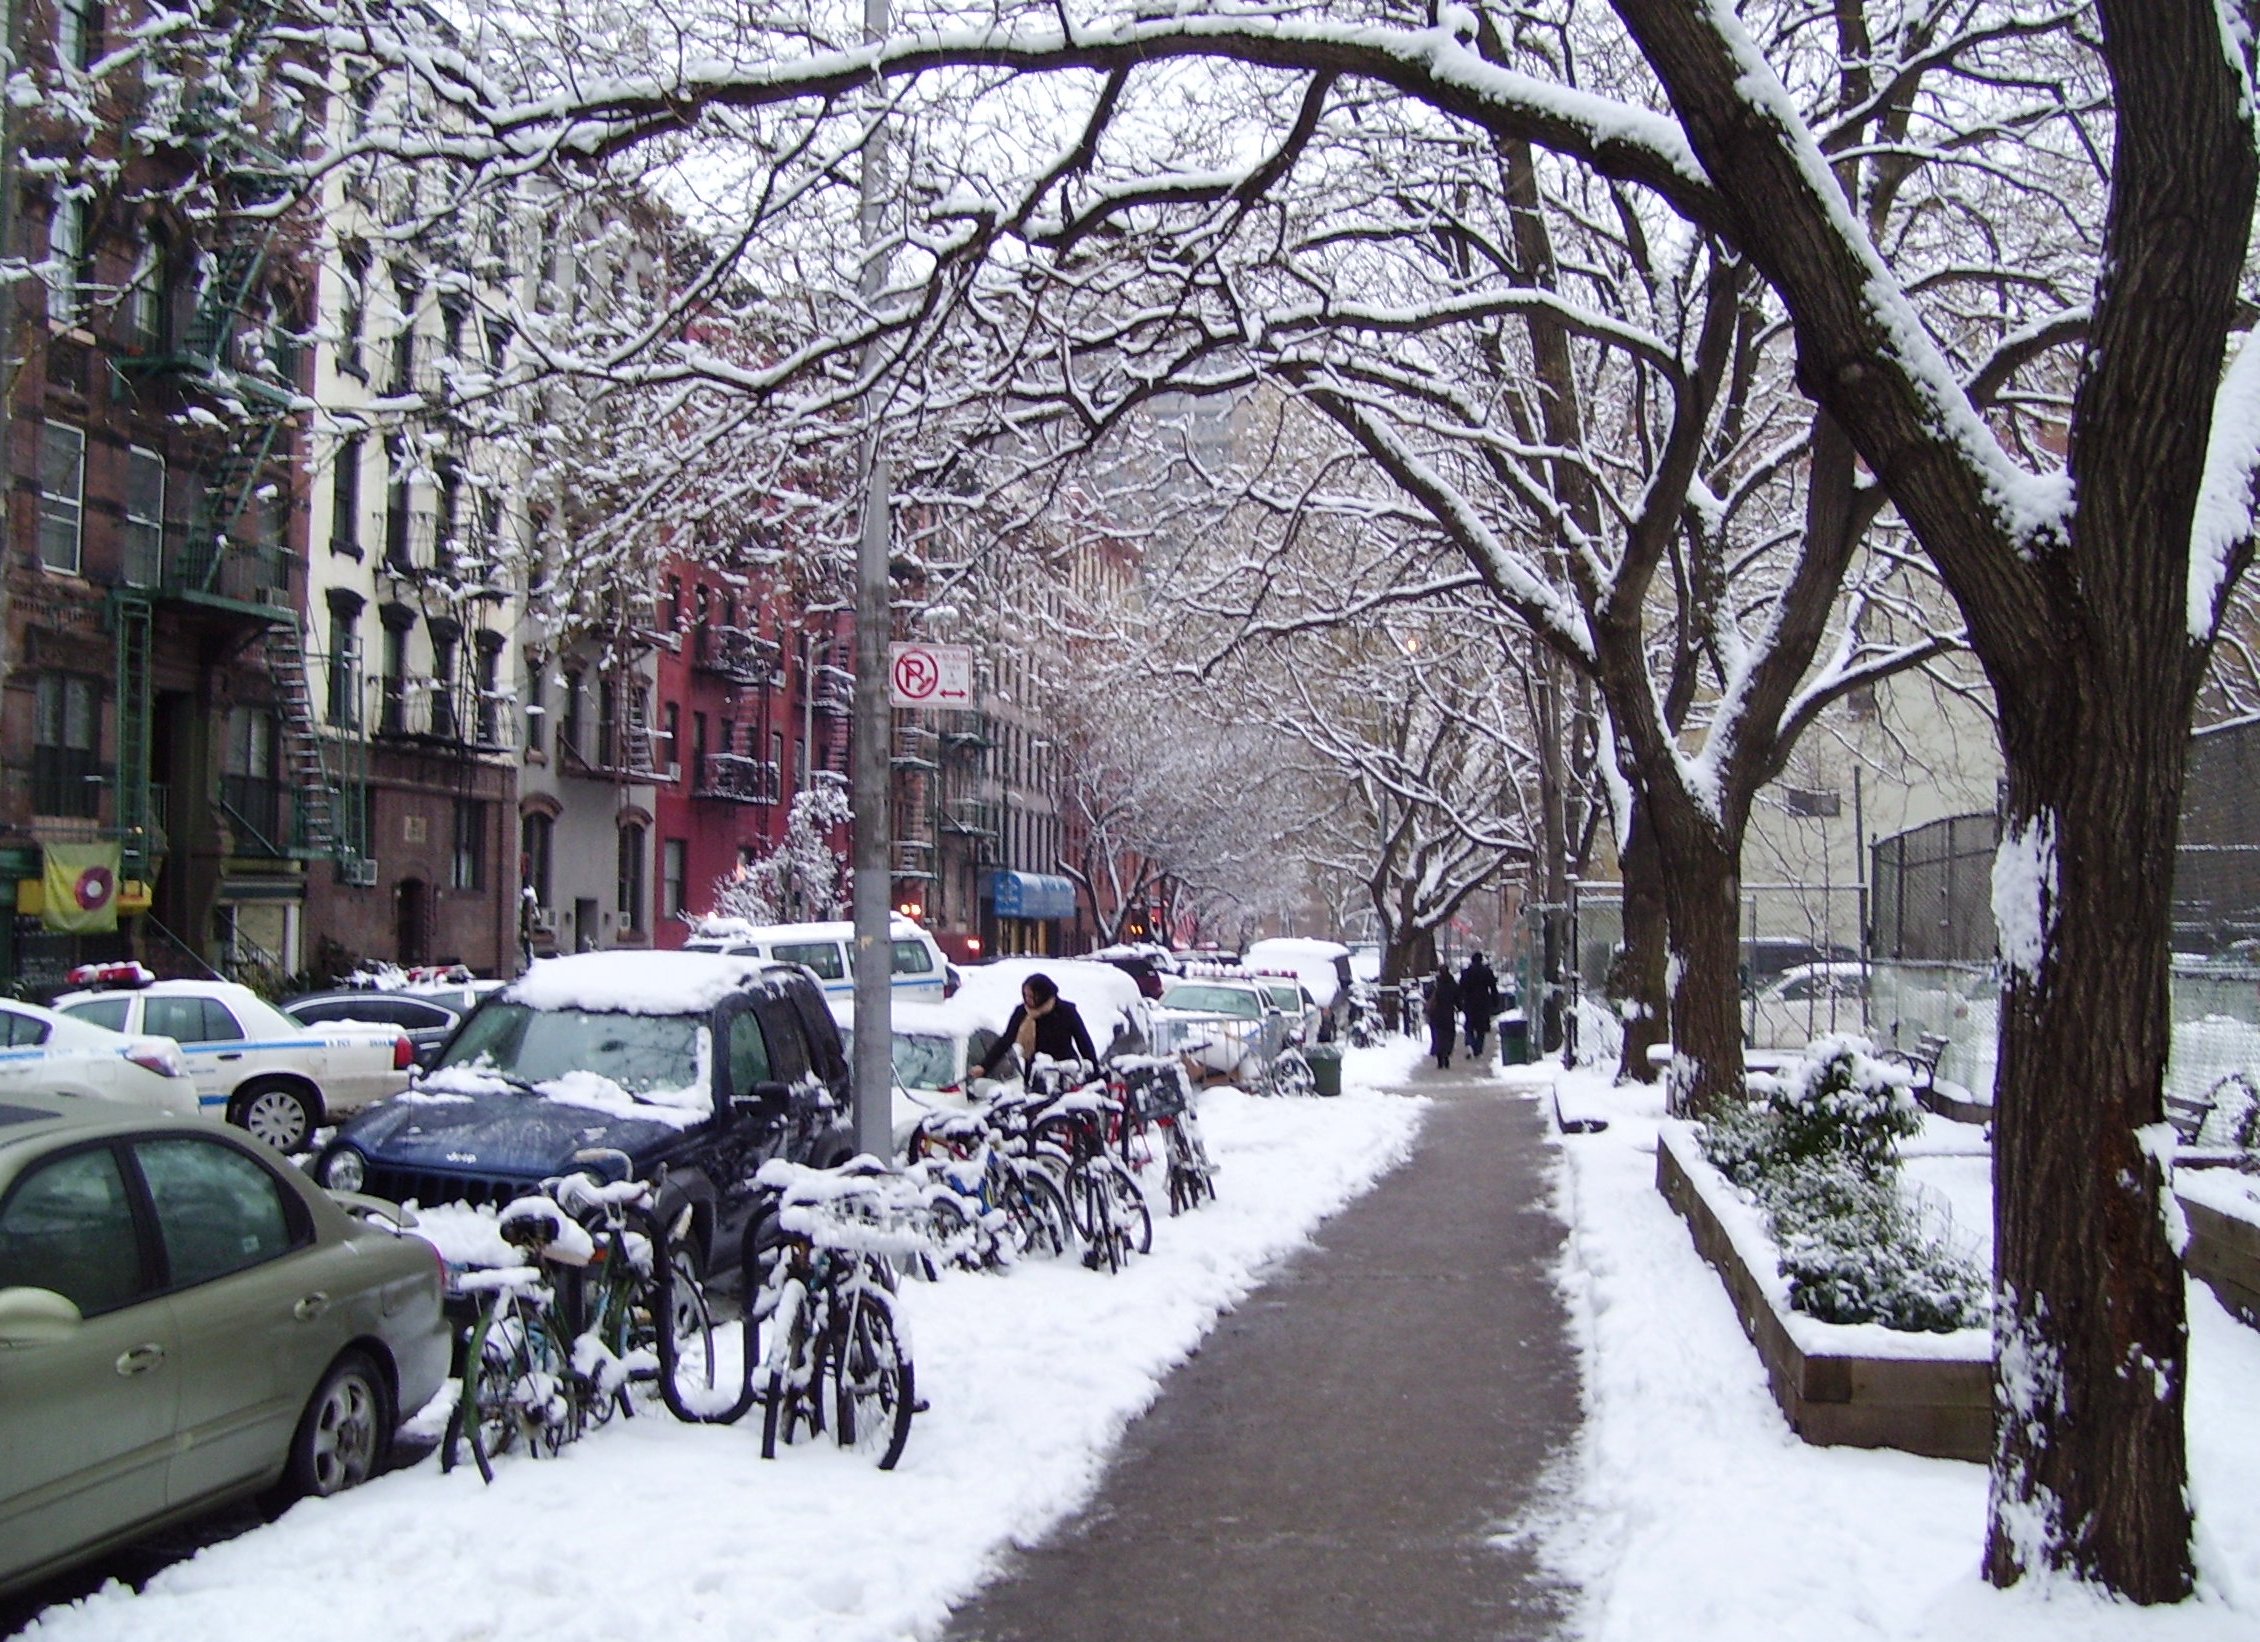 East 5th Street in winter